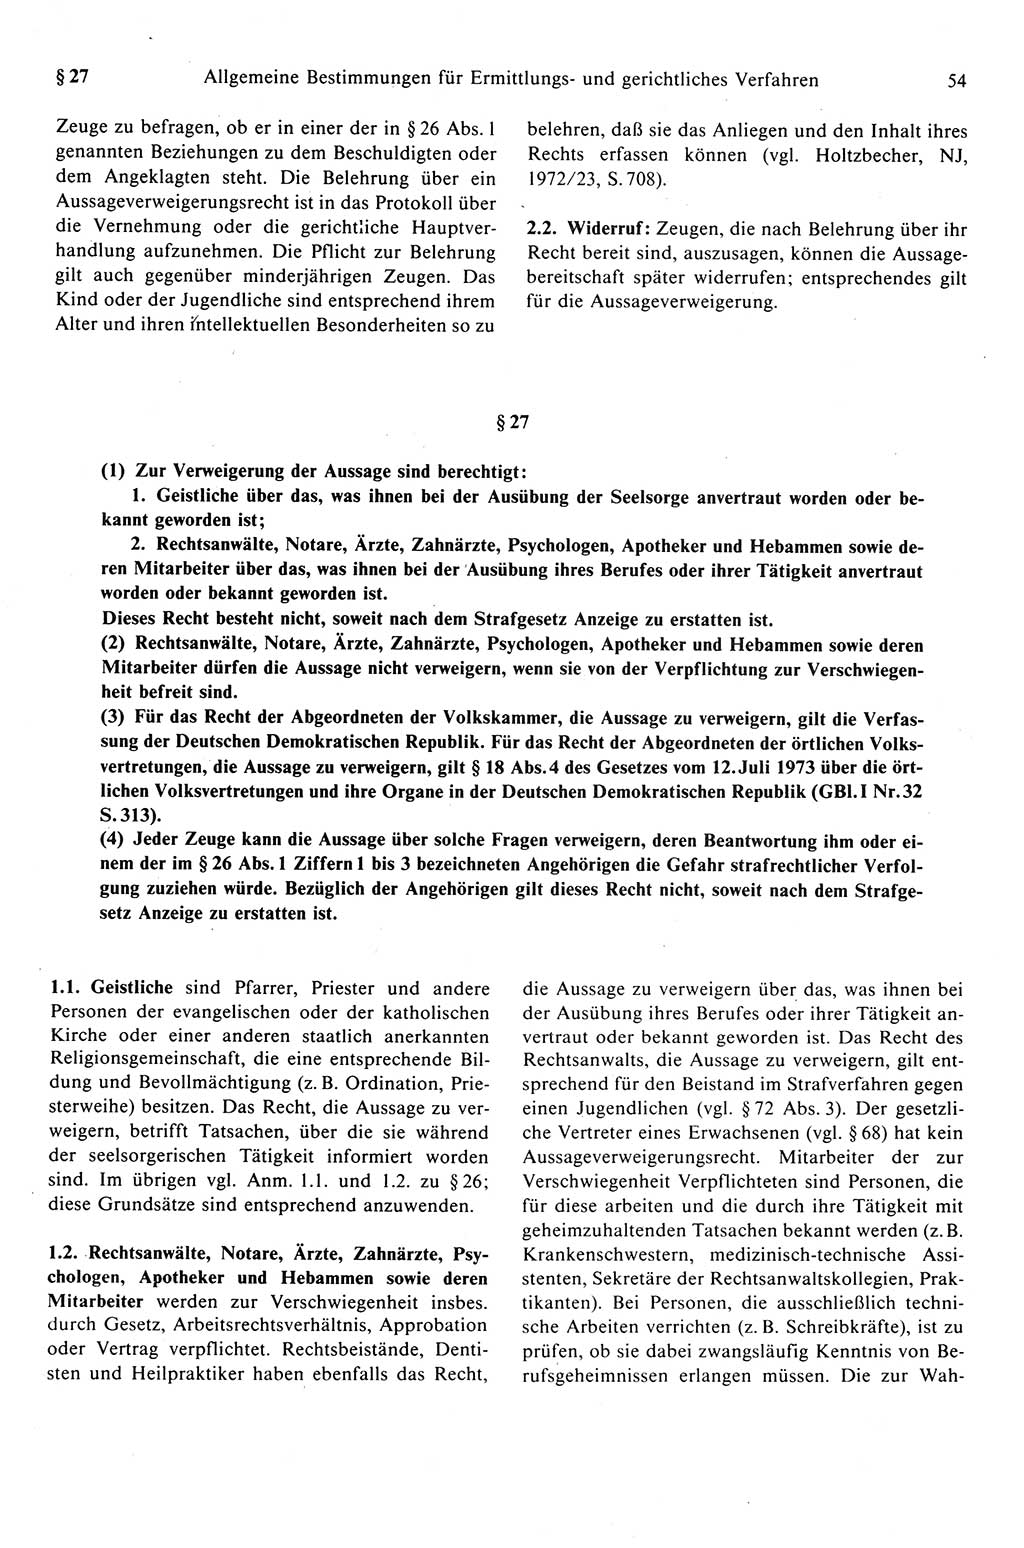 Strafprozeßrecht der DDR (Deutsche Demokratische Republik), Kommentar zur Strafprozeßordnung (StPO) 1989, Seite 54 (Strafprozeßr. DDR Komm. StPO 1989, S. 54)